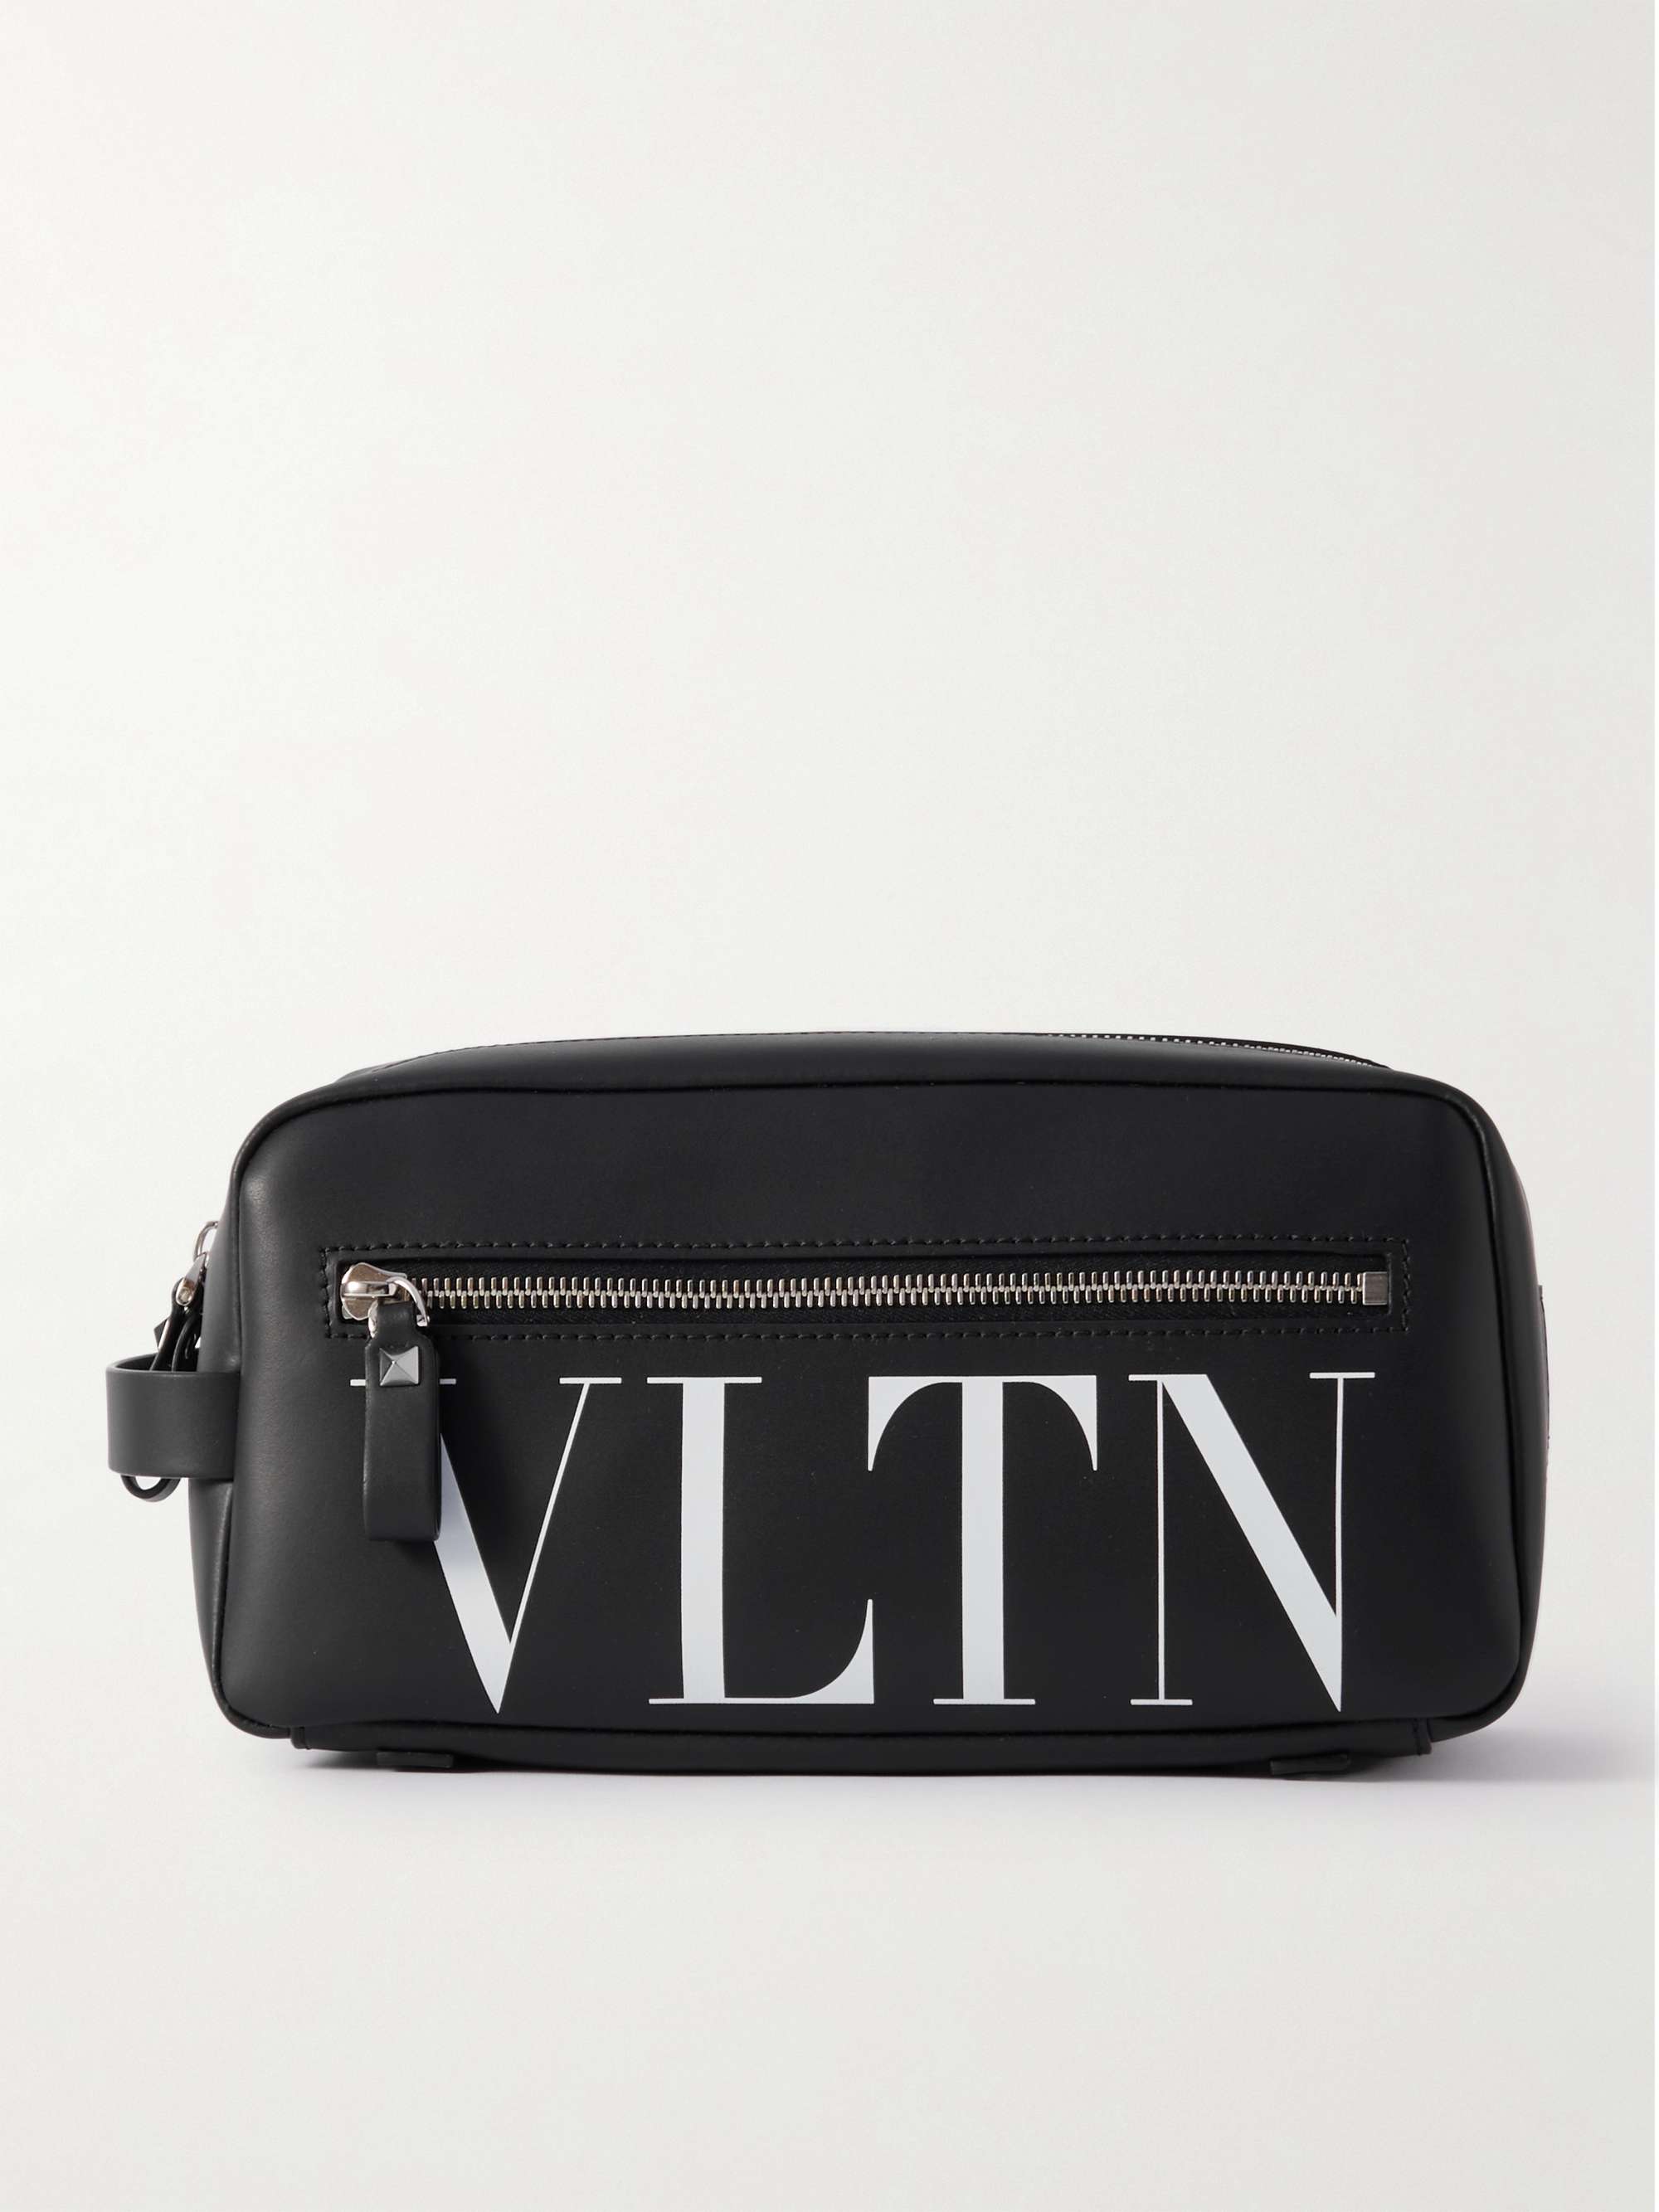 Valentino Garavani Small VLTN Leather Shoulder Bag - Black for Men